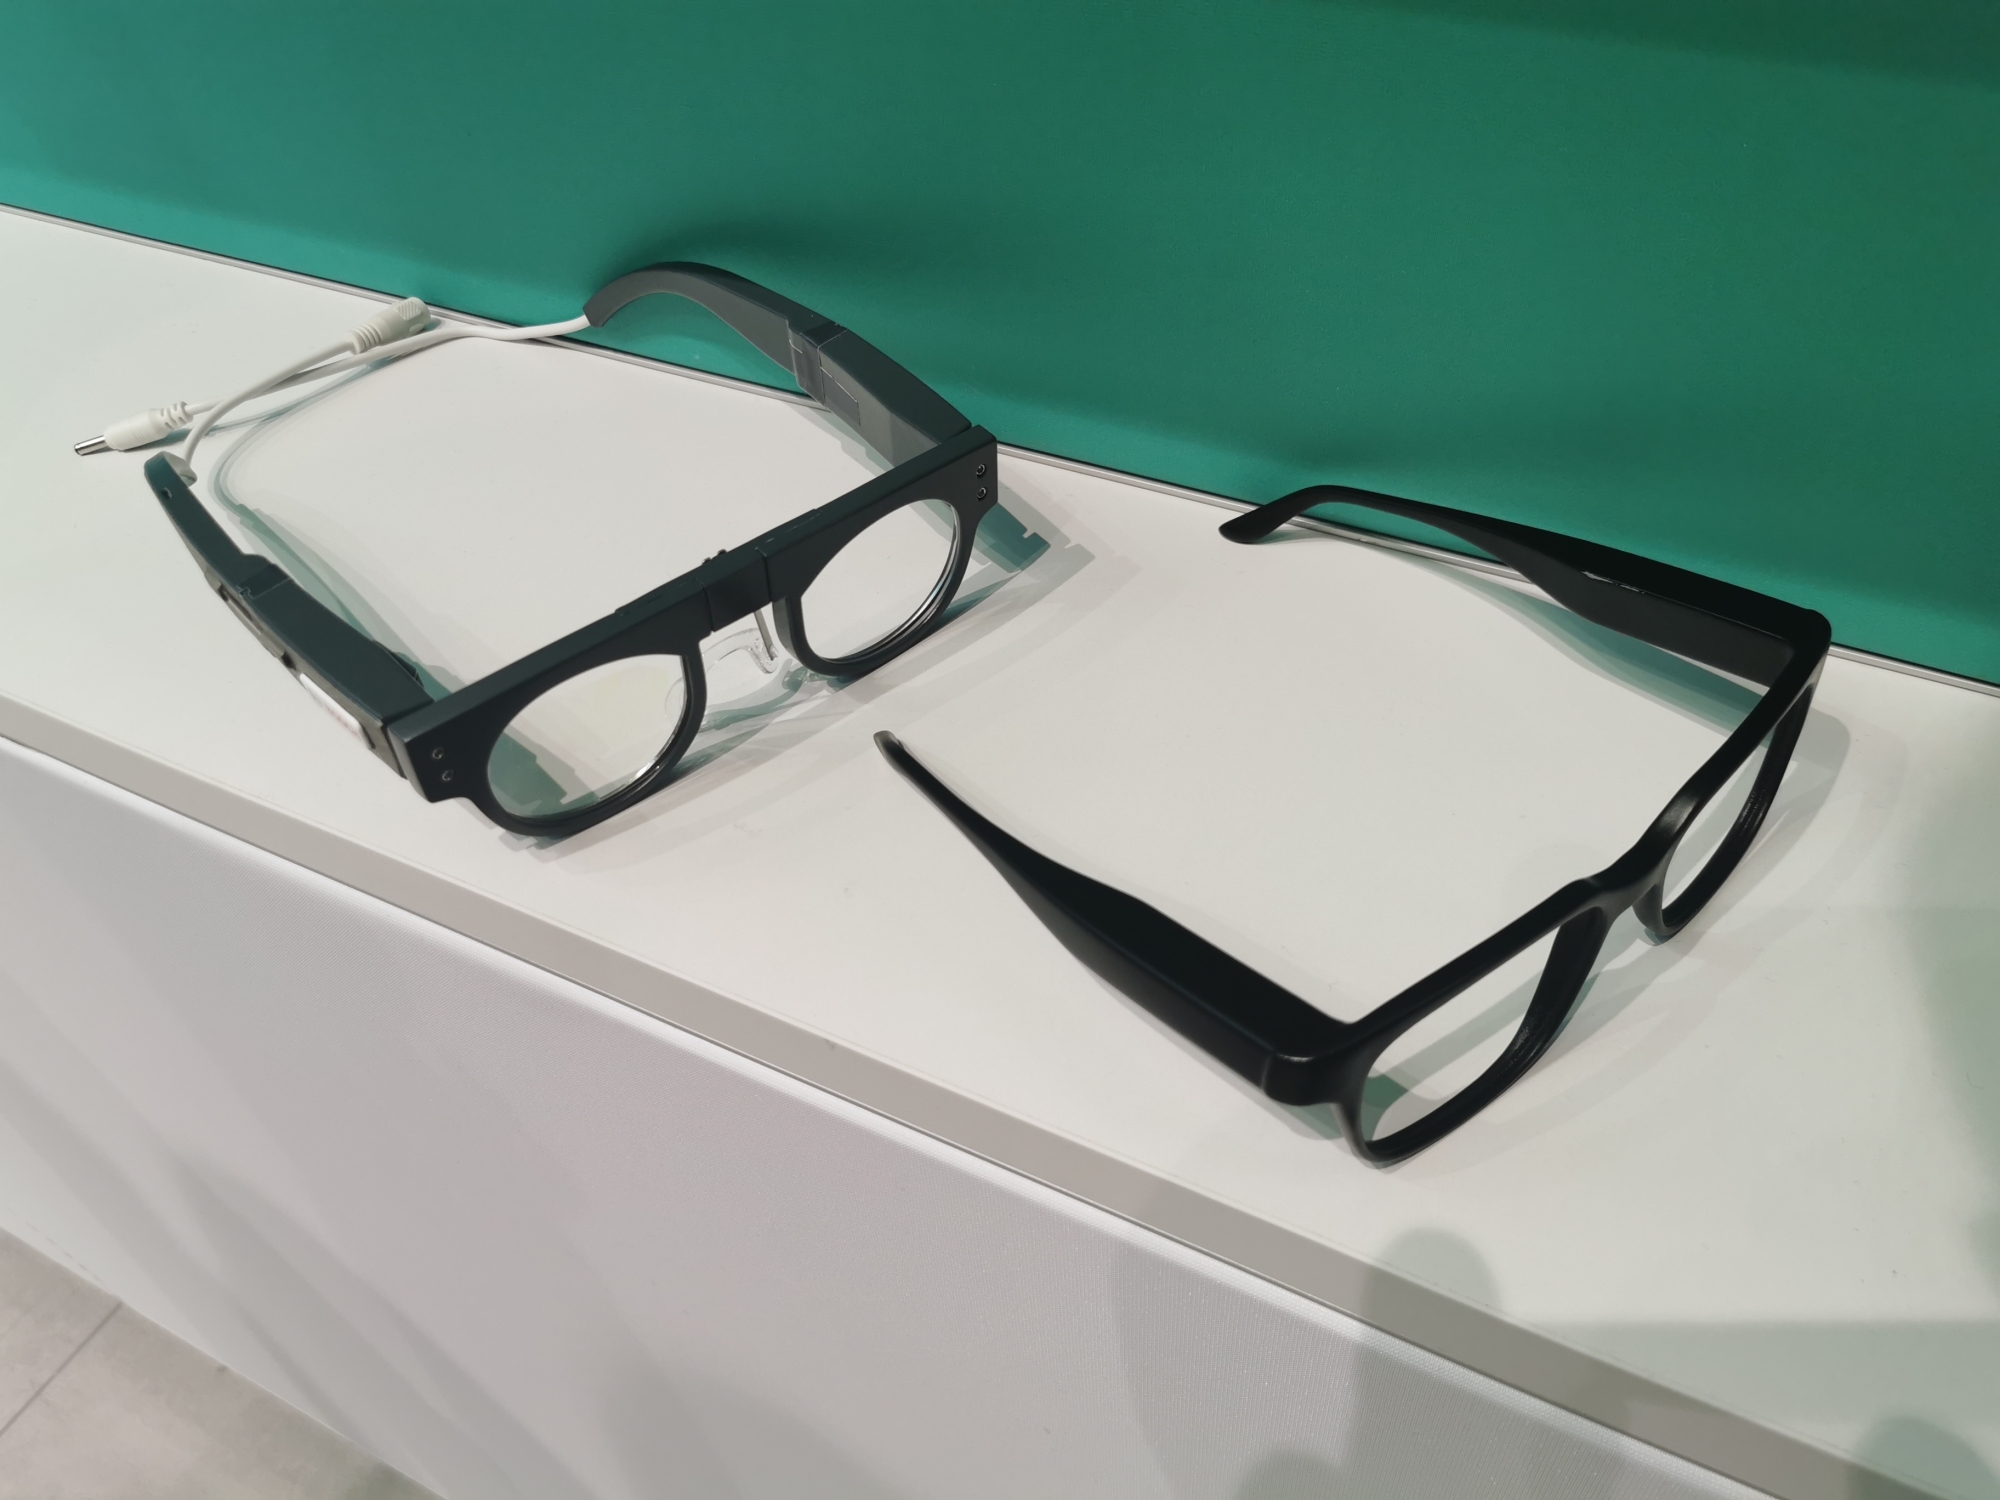 Ausprobiert: Bosch Light Drive macht normale Brille zum unsichtbaren  Display | heise online